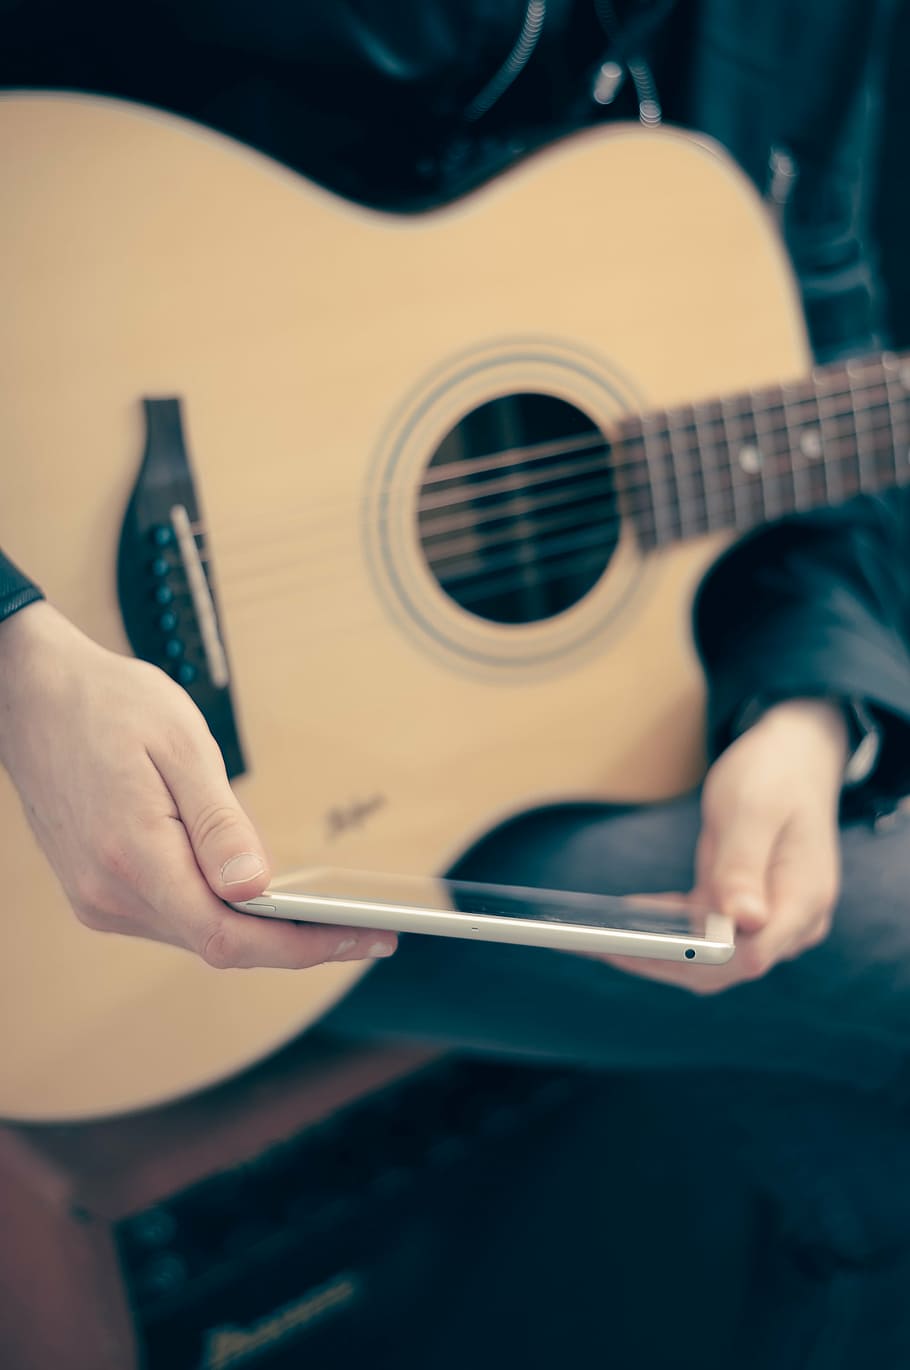 orang, memegang, putih, smartphone android, smartphone, ipad, tablet, gitar akustik, musisi, musik